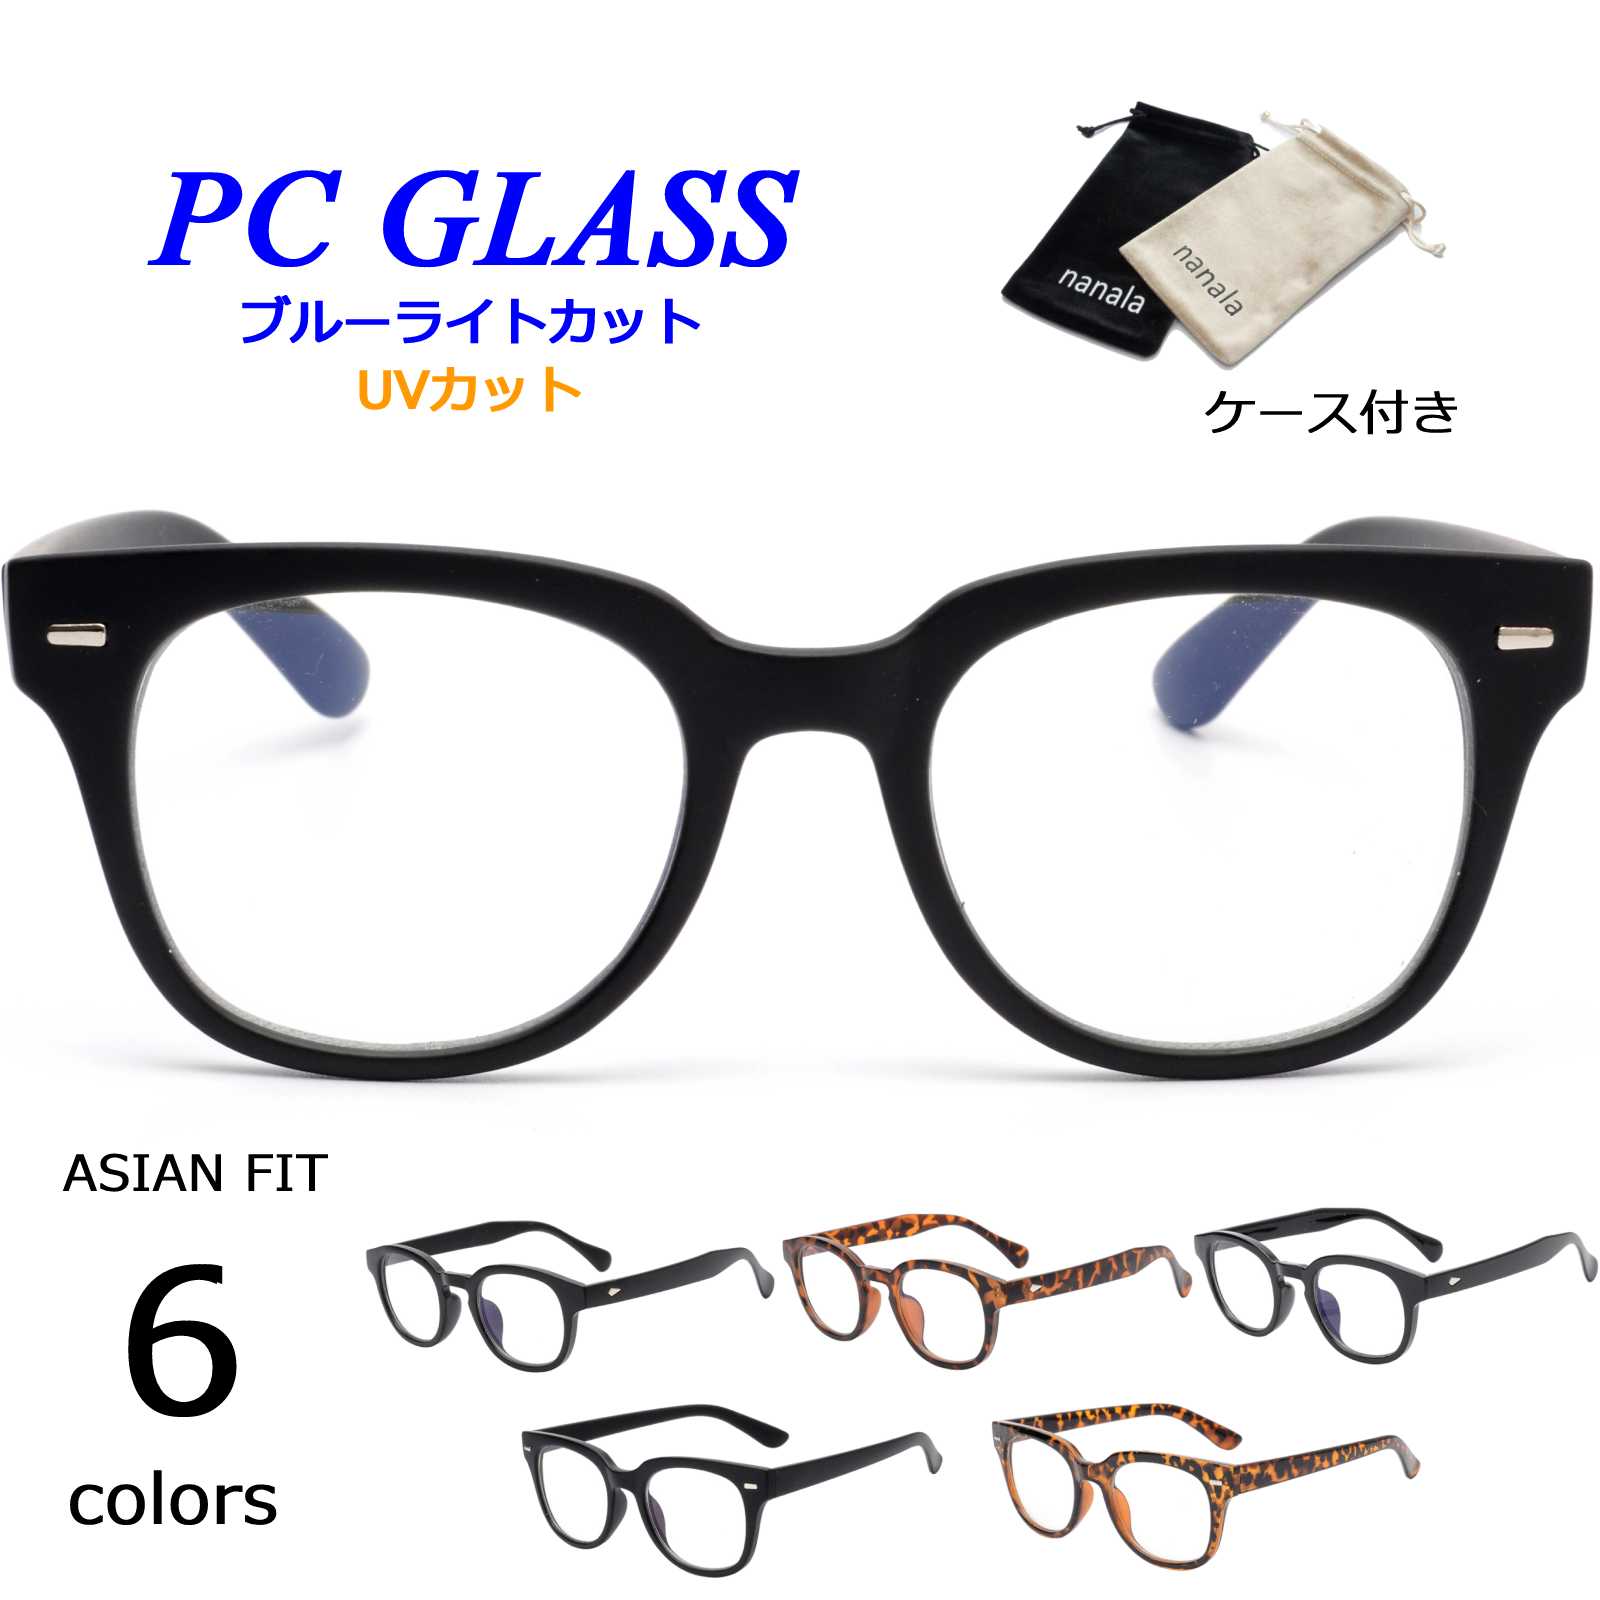 PCメガネ ブルーライトカットメガネ レンズ PC眼鏡 PCグラス パソコン用メガネ スマホ用メガネ 液晶 画面 スクリーン UVカット レディース メンズ おしゃれ ファッション オフィスグッズ ブランド ウェリントン 太めセル